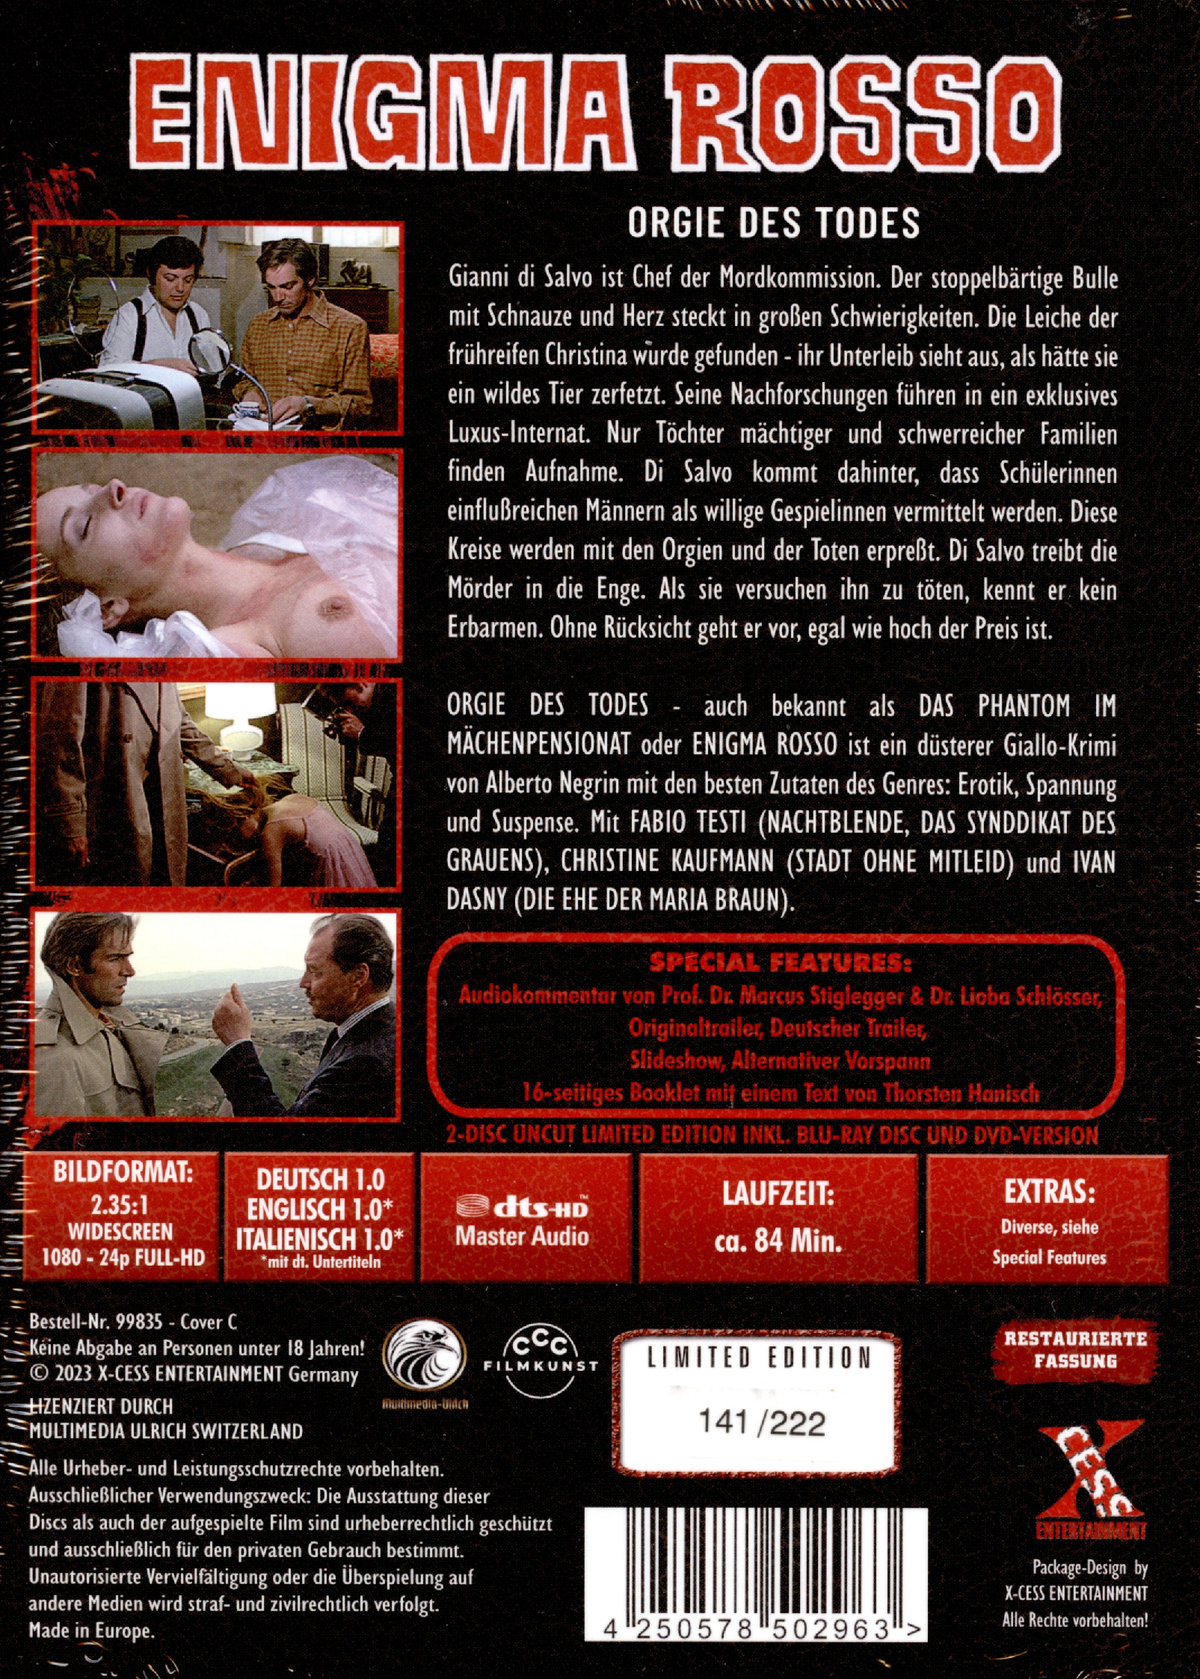 Enigma Rosso (Orgie des Todes) - Uncut Mediabook Edition  (DVD+blu-ray) (C)